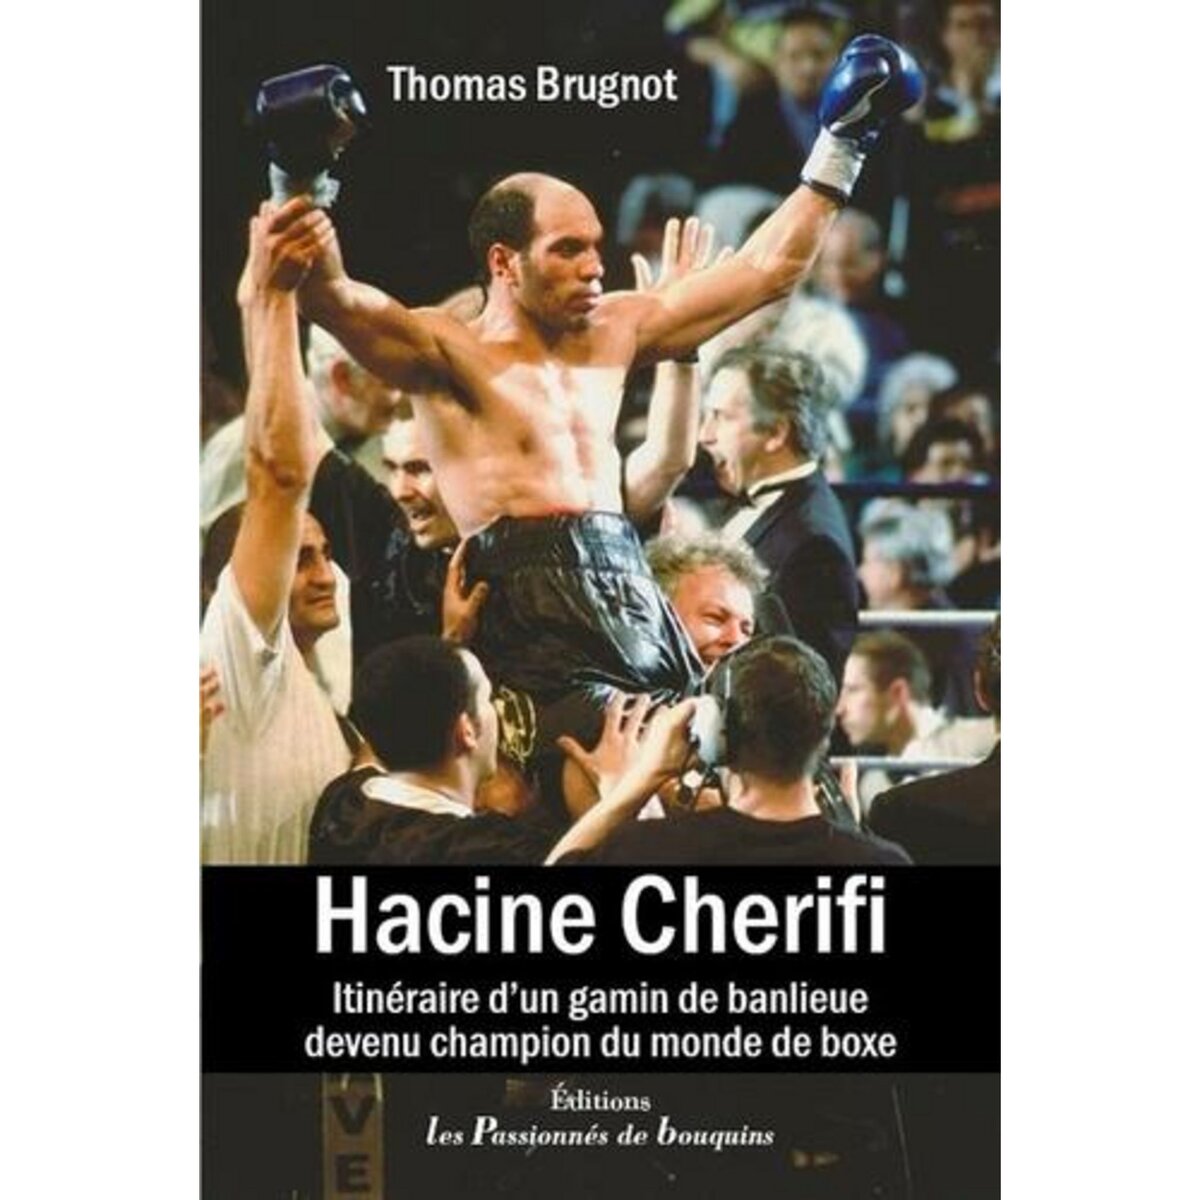  HACINE CHERIFI. ITINERAIRE D'UN GAMIN DE BANLIEUE DEVENU CHAMPION DU MONDE DE BOXE, Brugnot Thomas